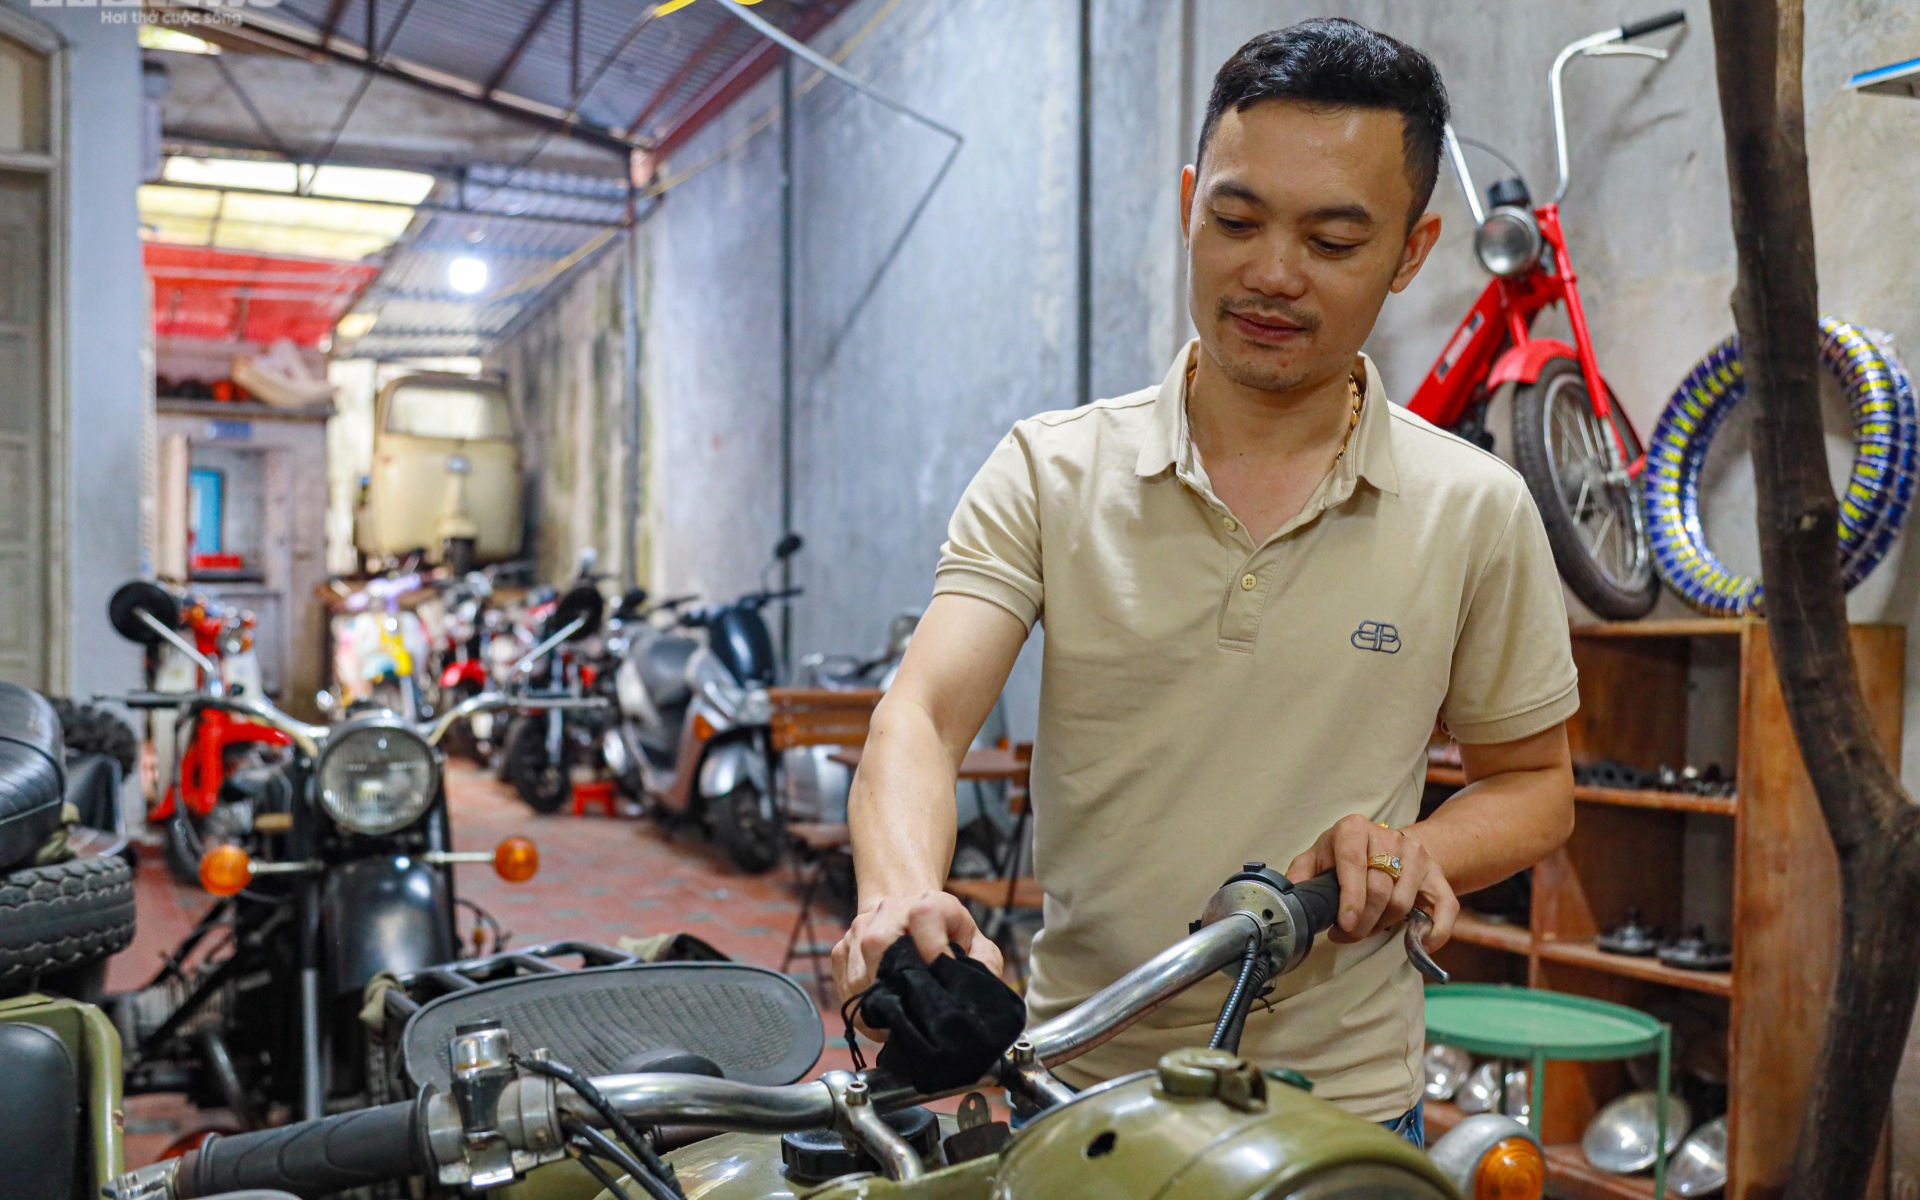 Ngắm bộ sưu tập xe cổ hàng trăm năm tuổi của chàng trai 9X ở Hà Nội